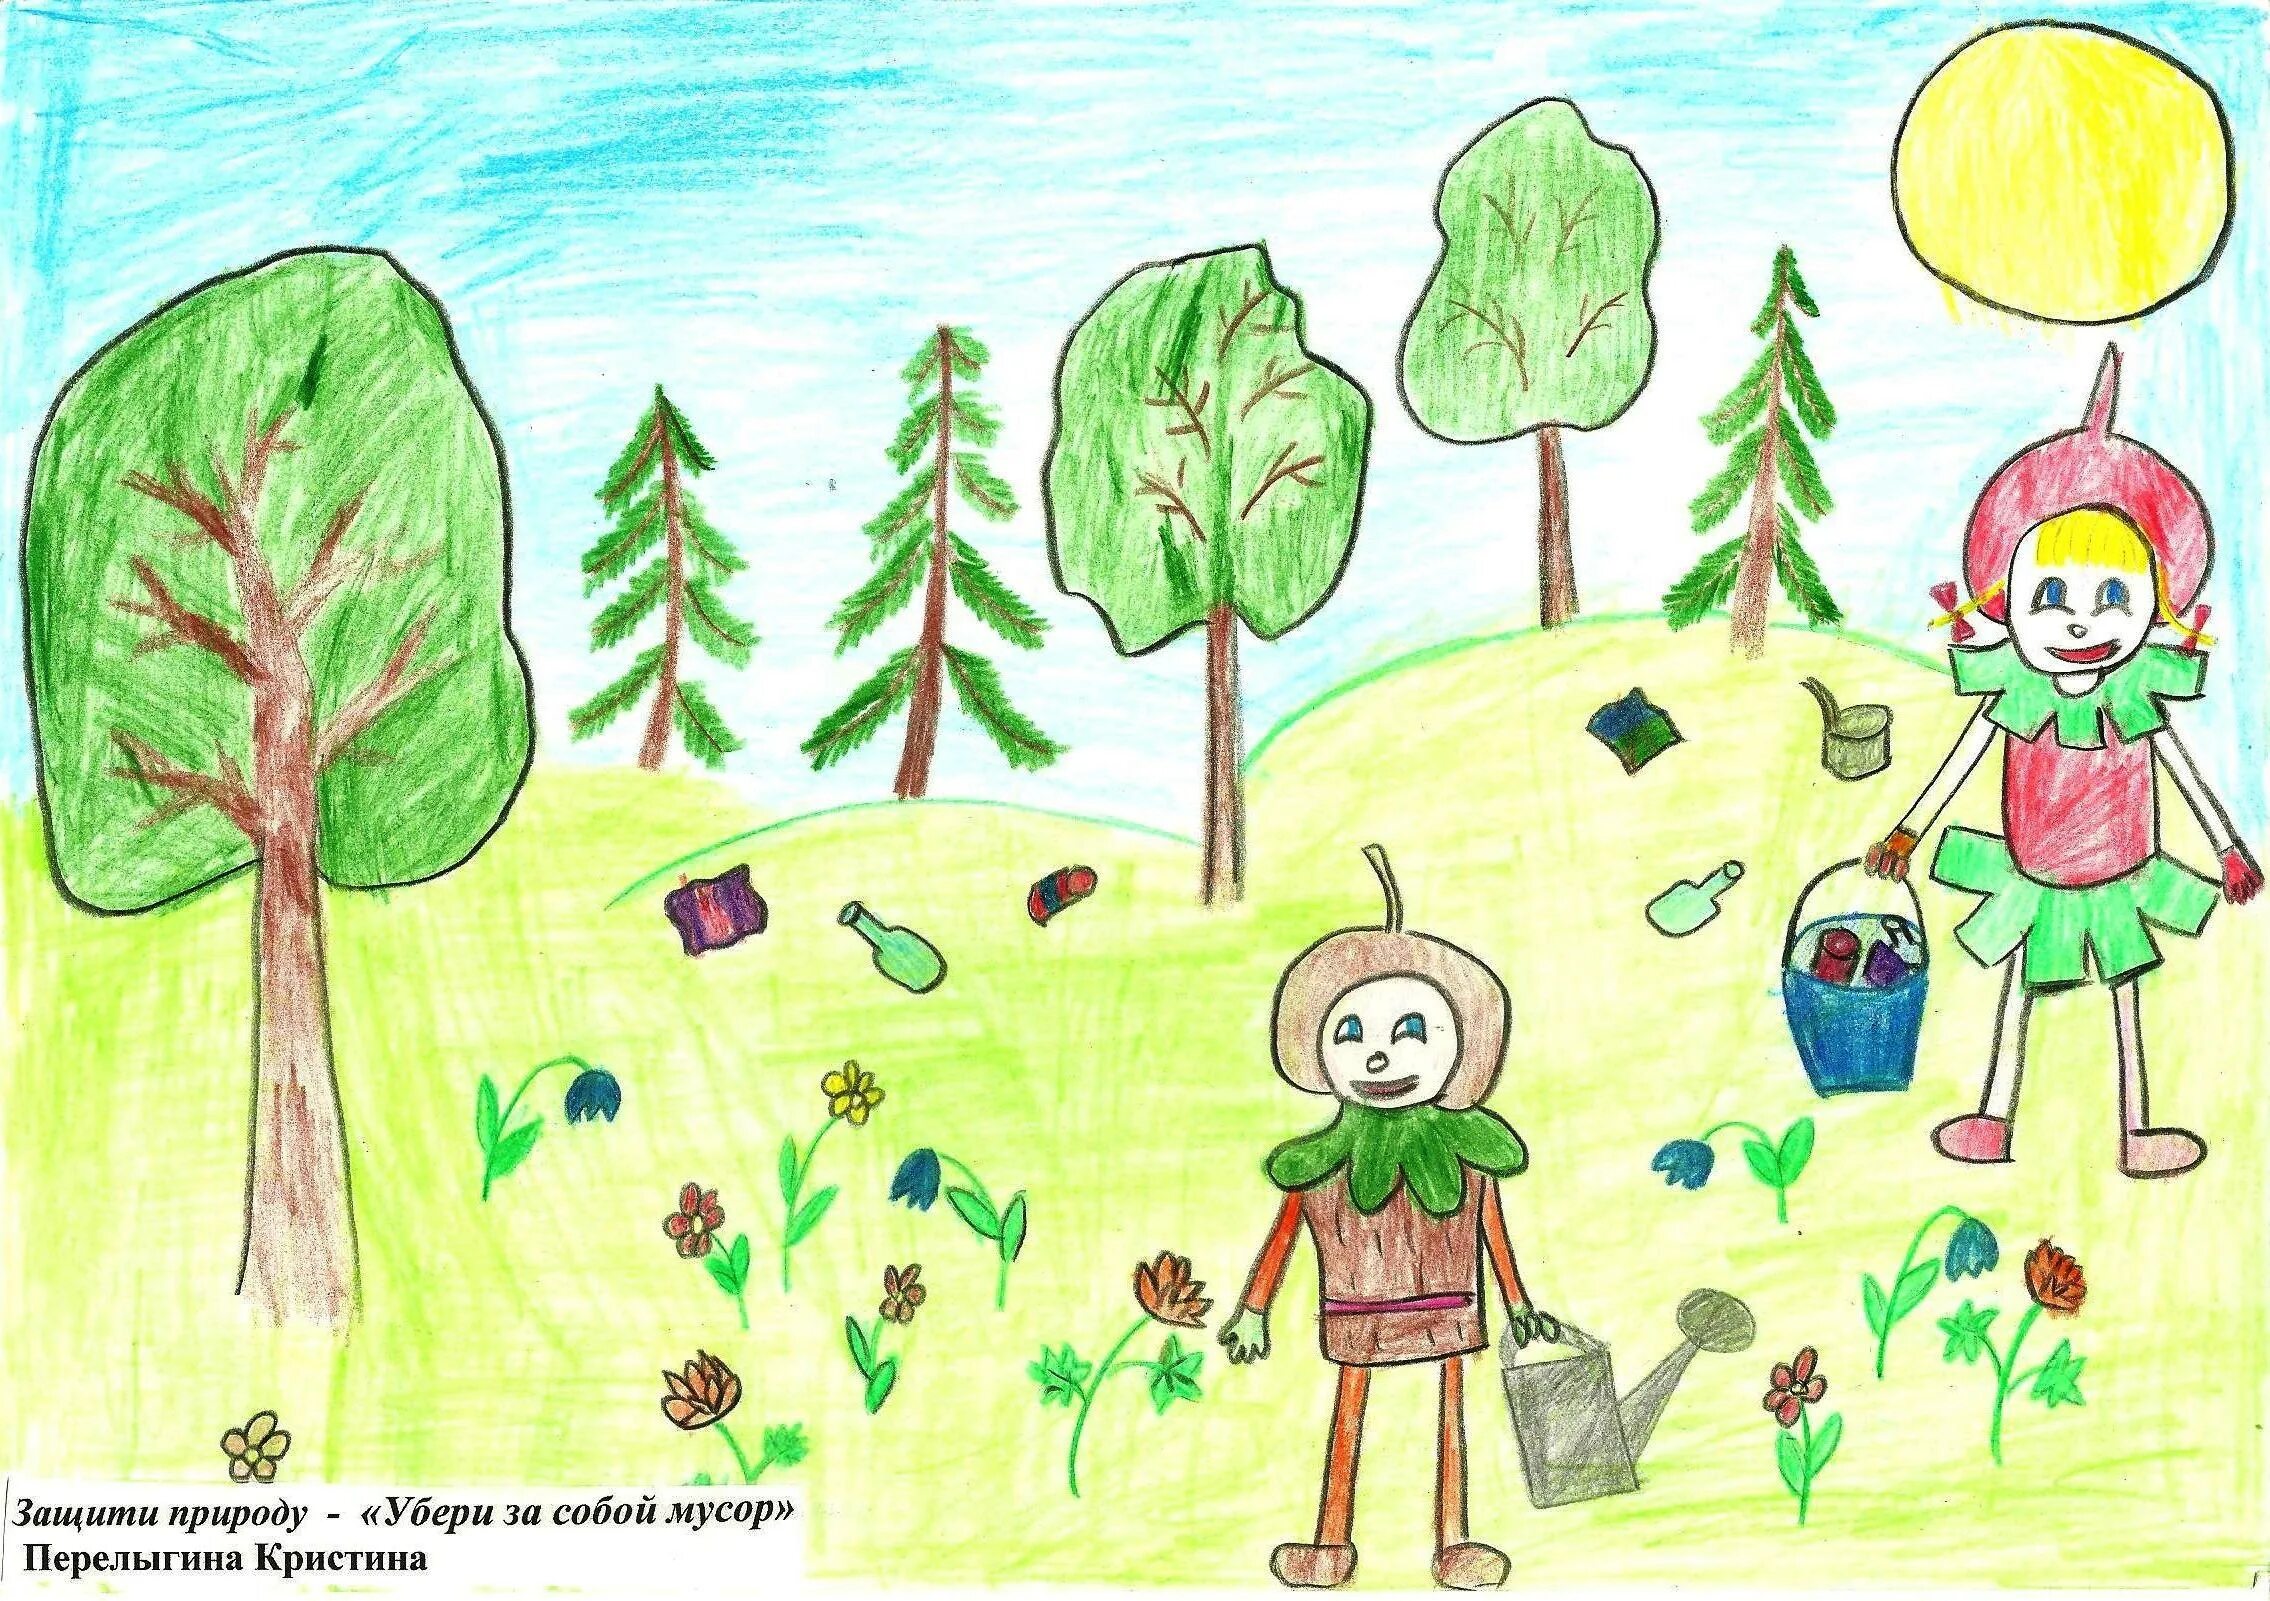 Рисунок на тему экология. Рисование на тему защитники природы. Рисунок на тему экологии для детского сада. Рисунок экология природы. Рисунок на тему эколята защитники природы